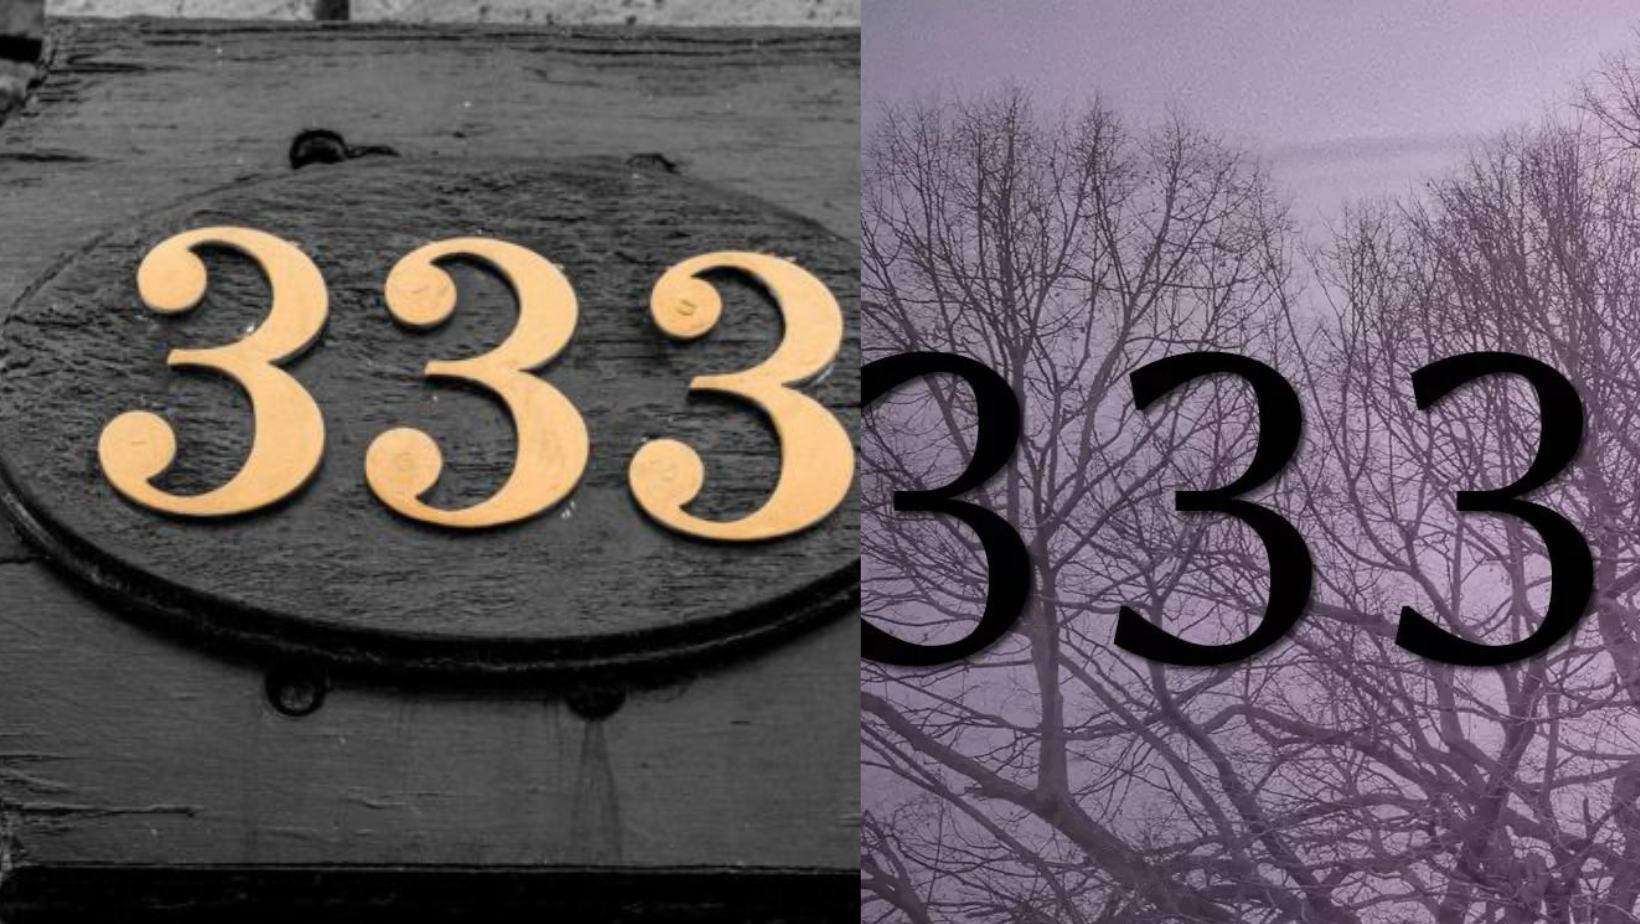 333 signification flamme jumelle : Découvrez les mystères spirituels du nombre 333 et son lien profond avec les flammes jumelles